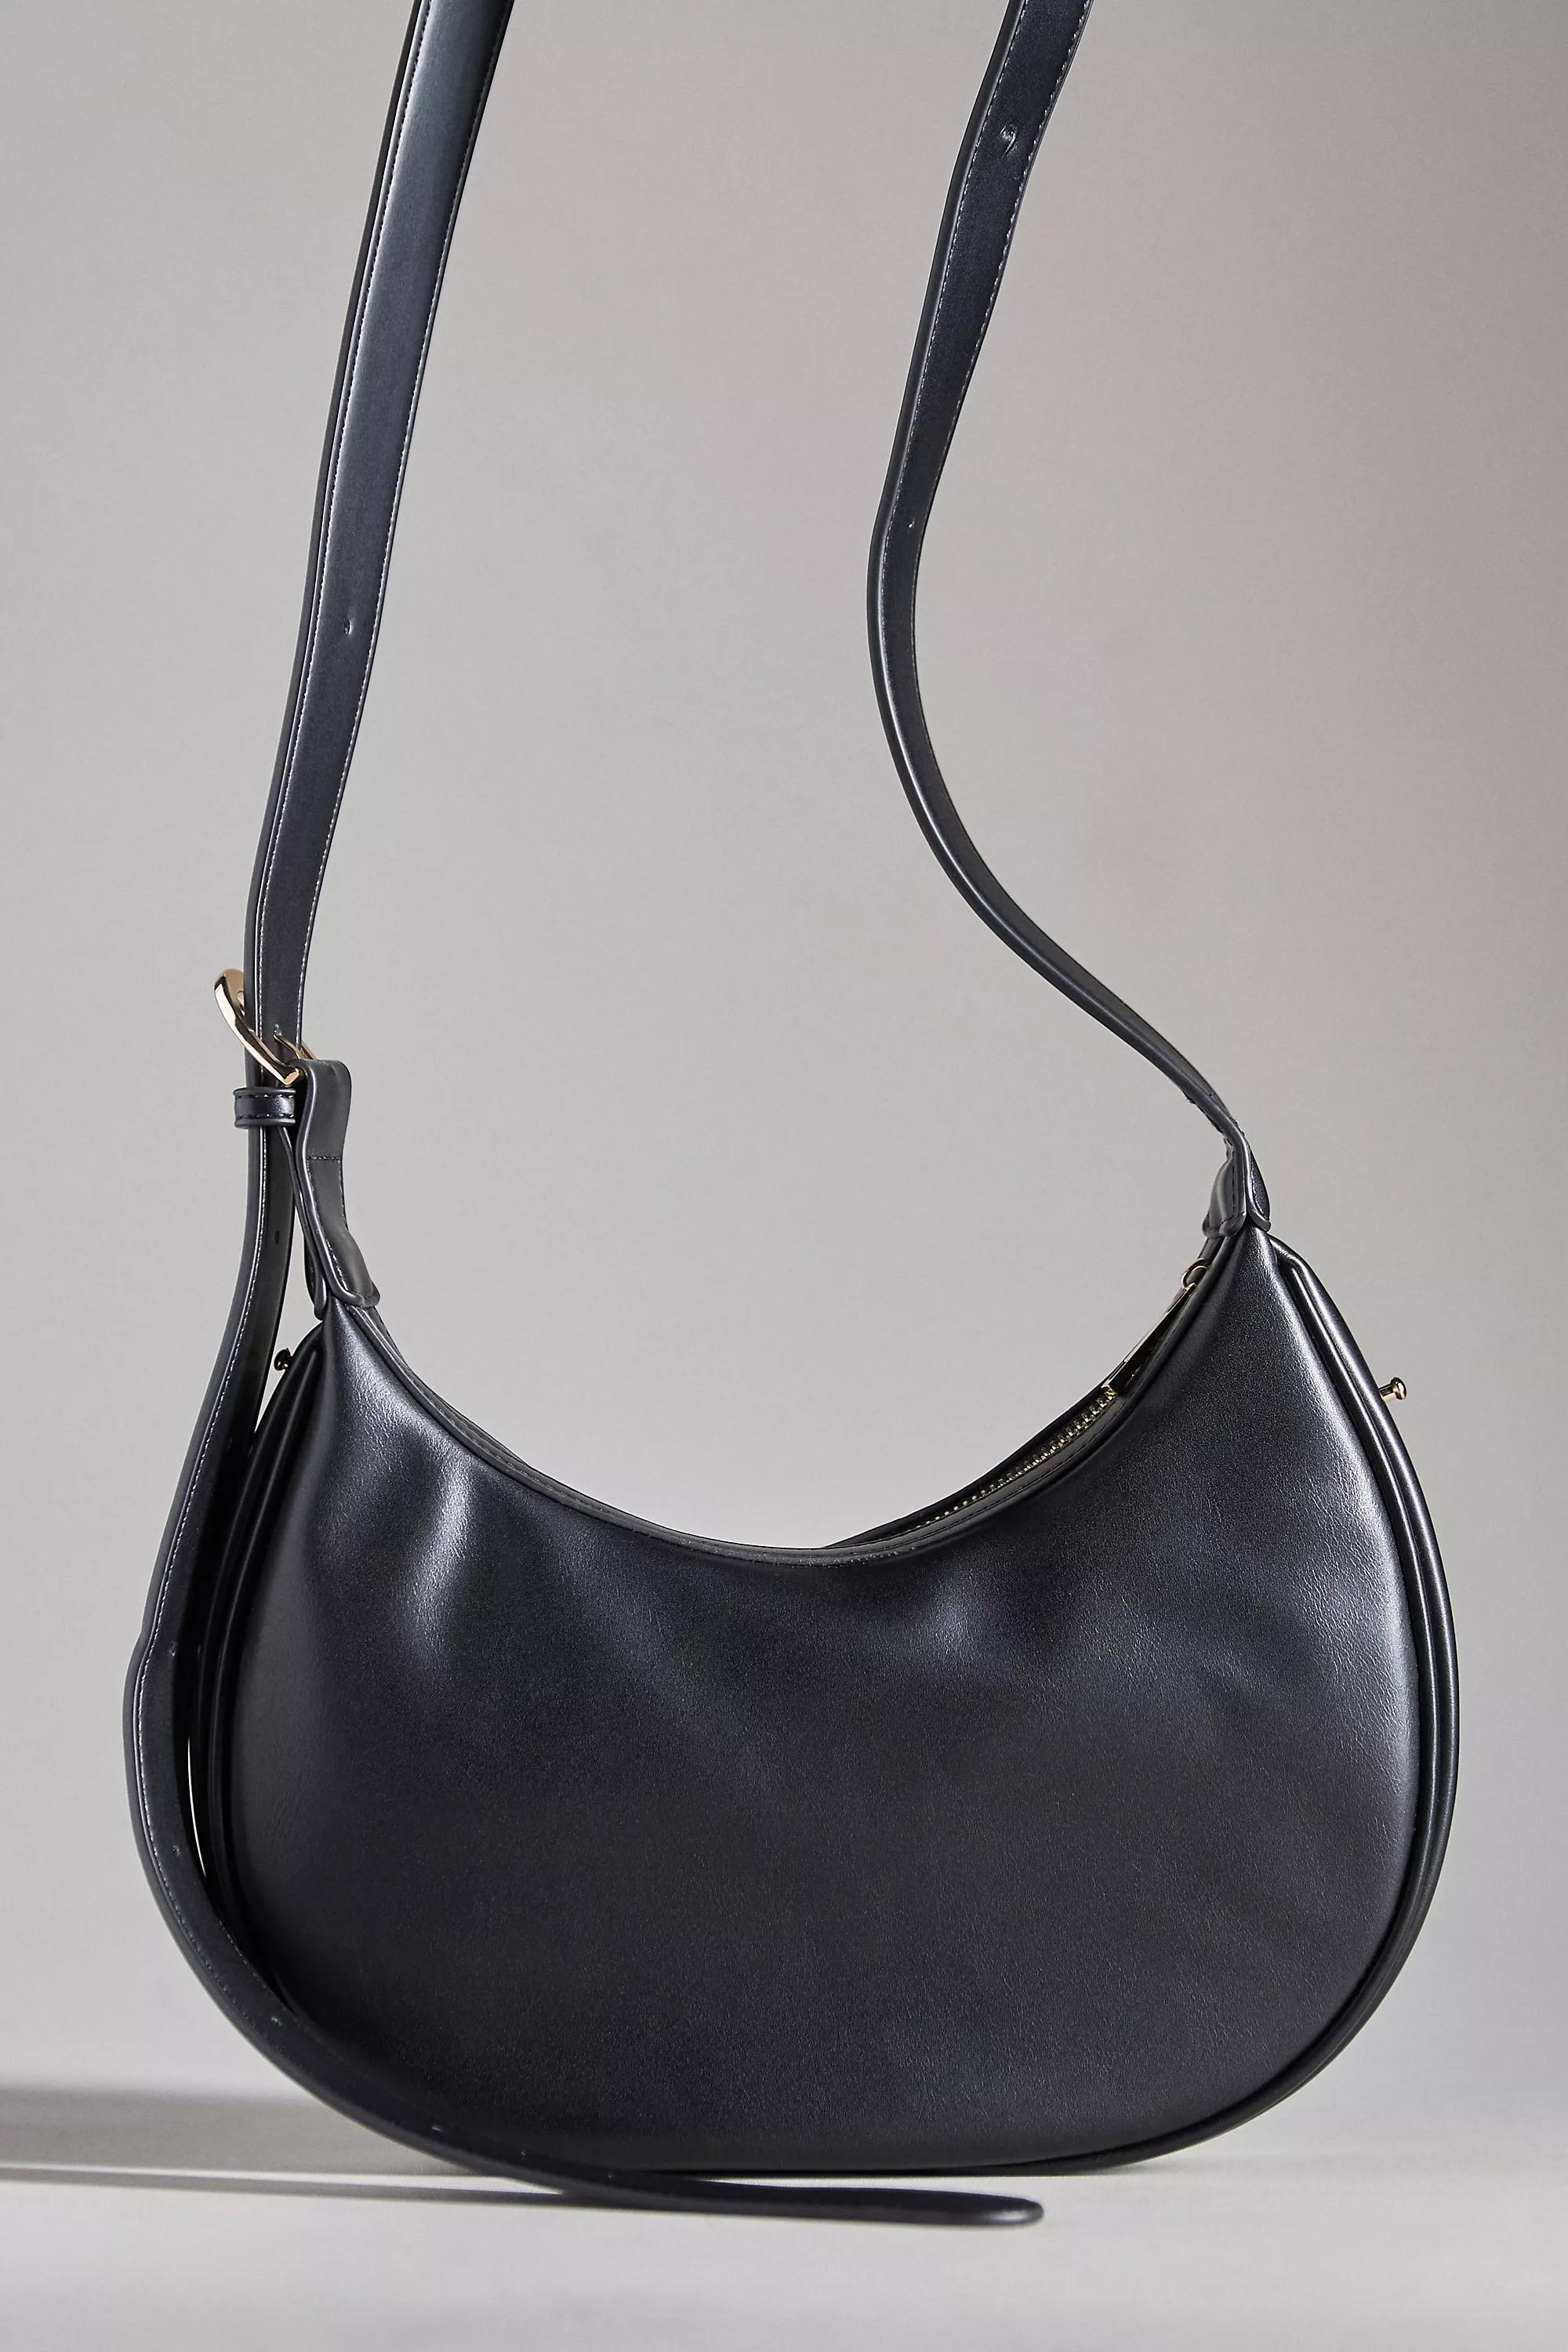 Anthropologie - The Brea Faux Leather Shoulder Bag, Black